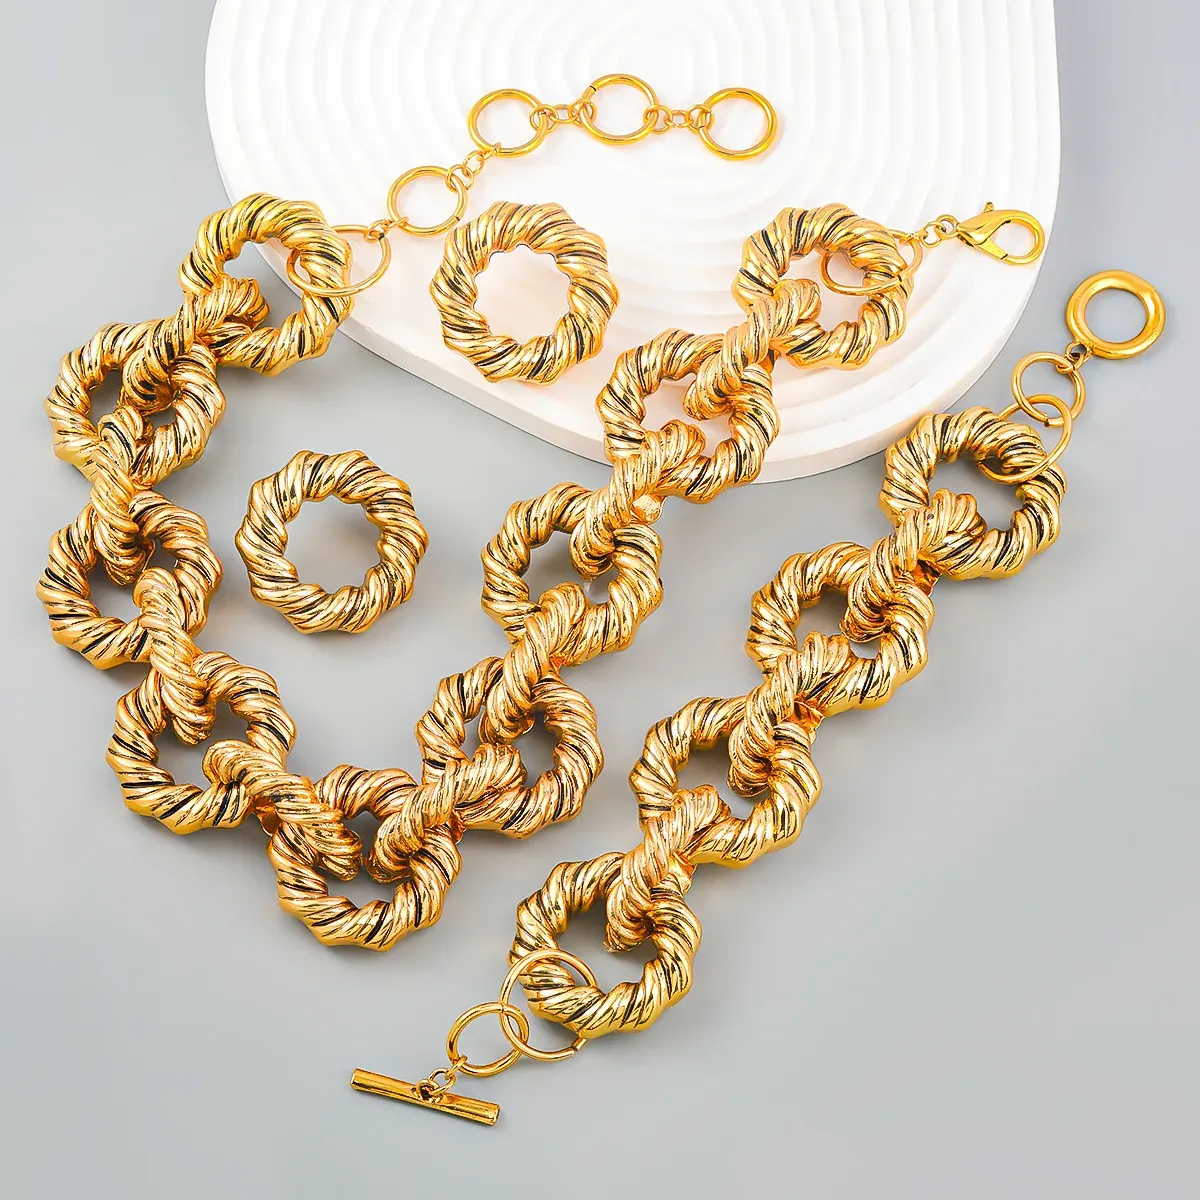 Ожерелья Новое прибытие заявление Кокер женщина роскошные золотые цвета металлические обручи аксессуары для женщин.